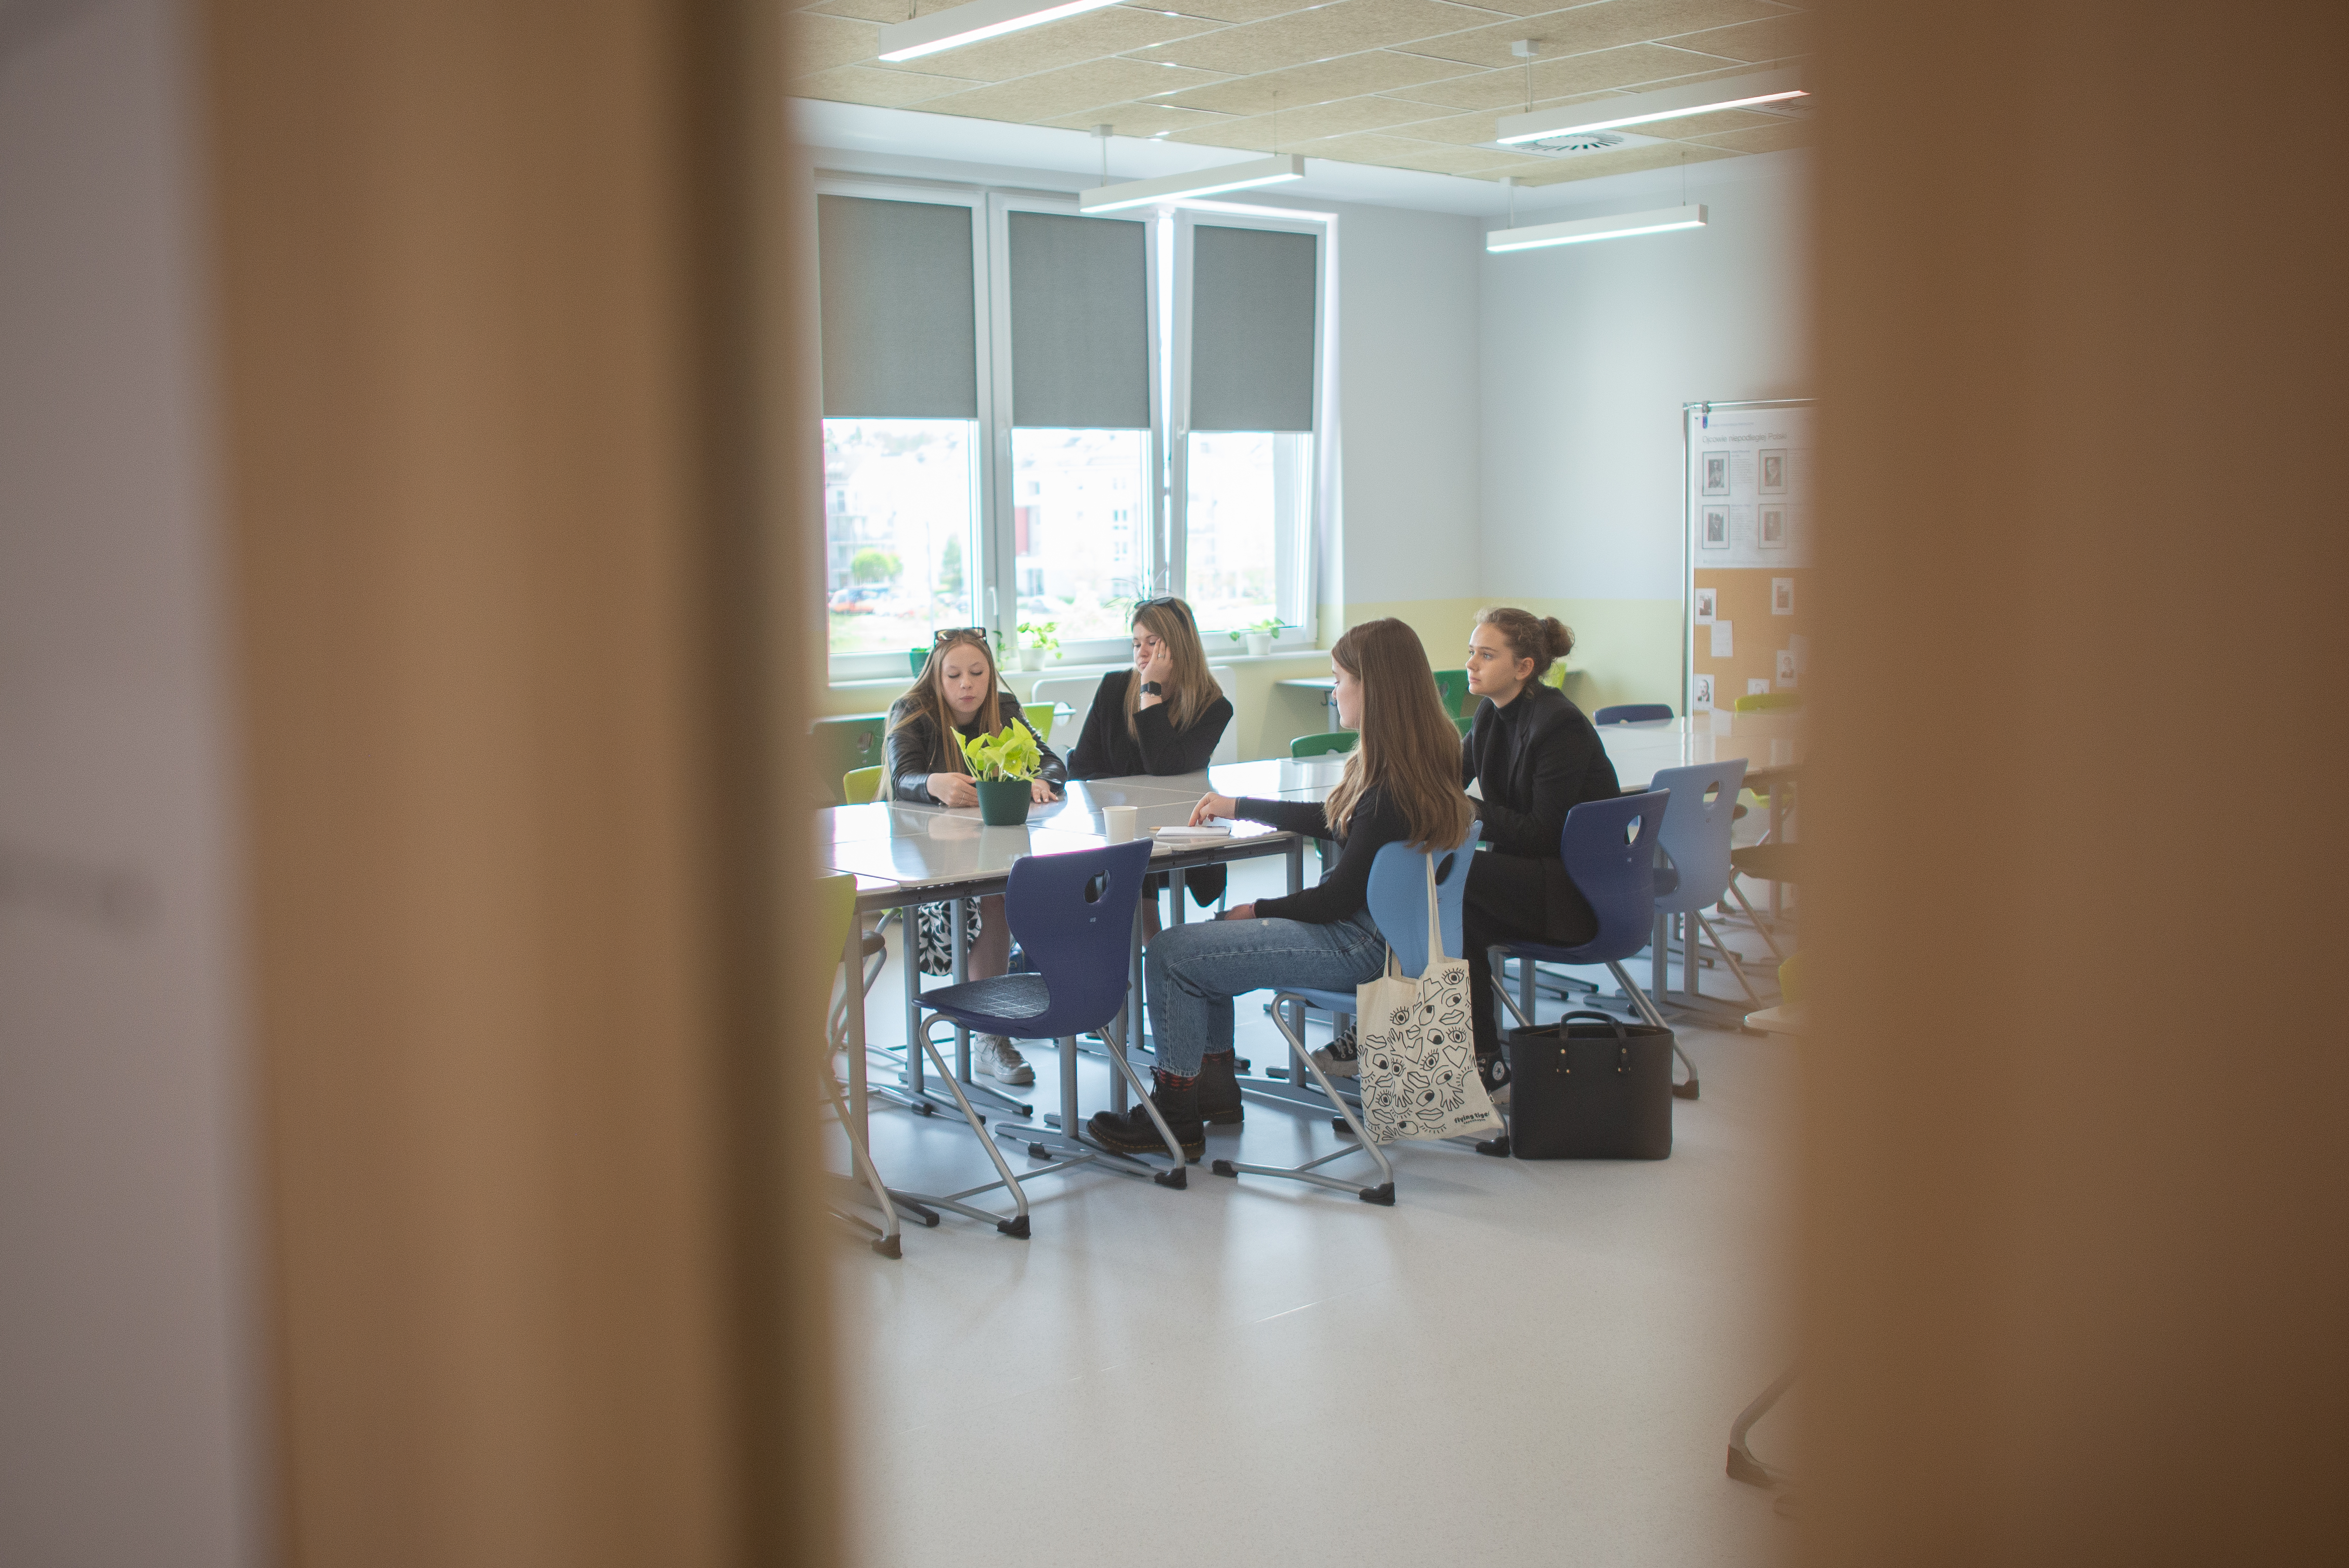 Przez wizjer w drzwiach widać grupę dziewcząt siedzącą w klasie przy stole